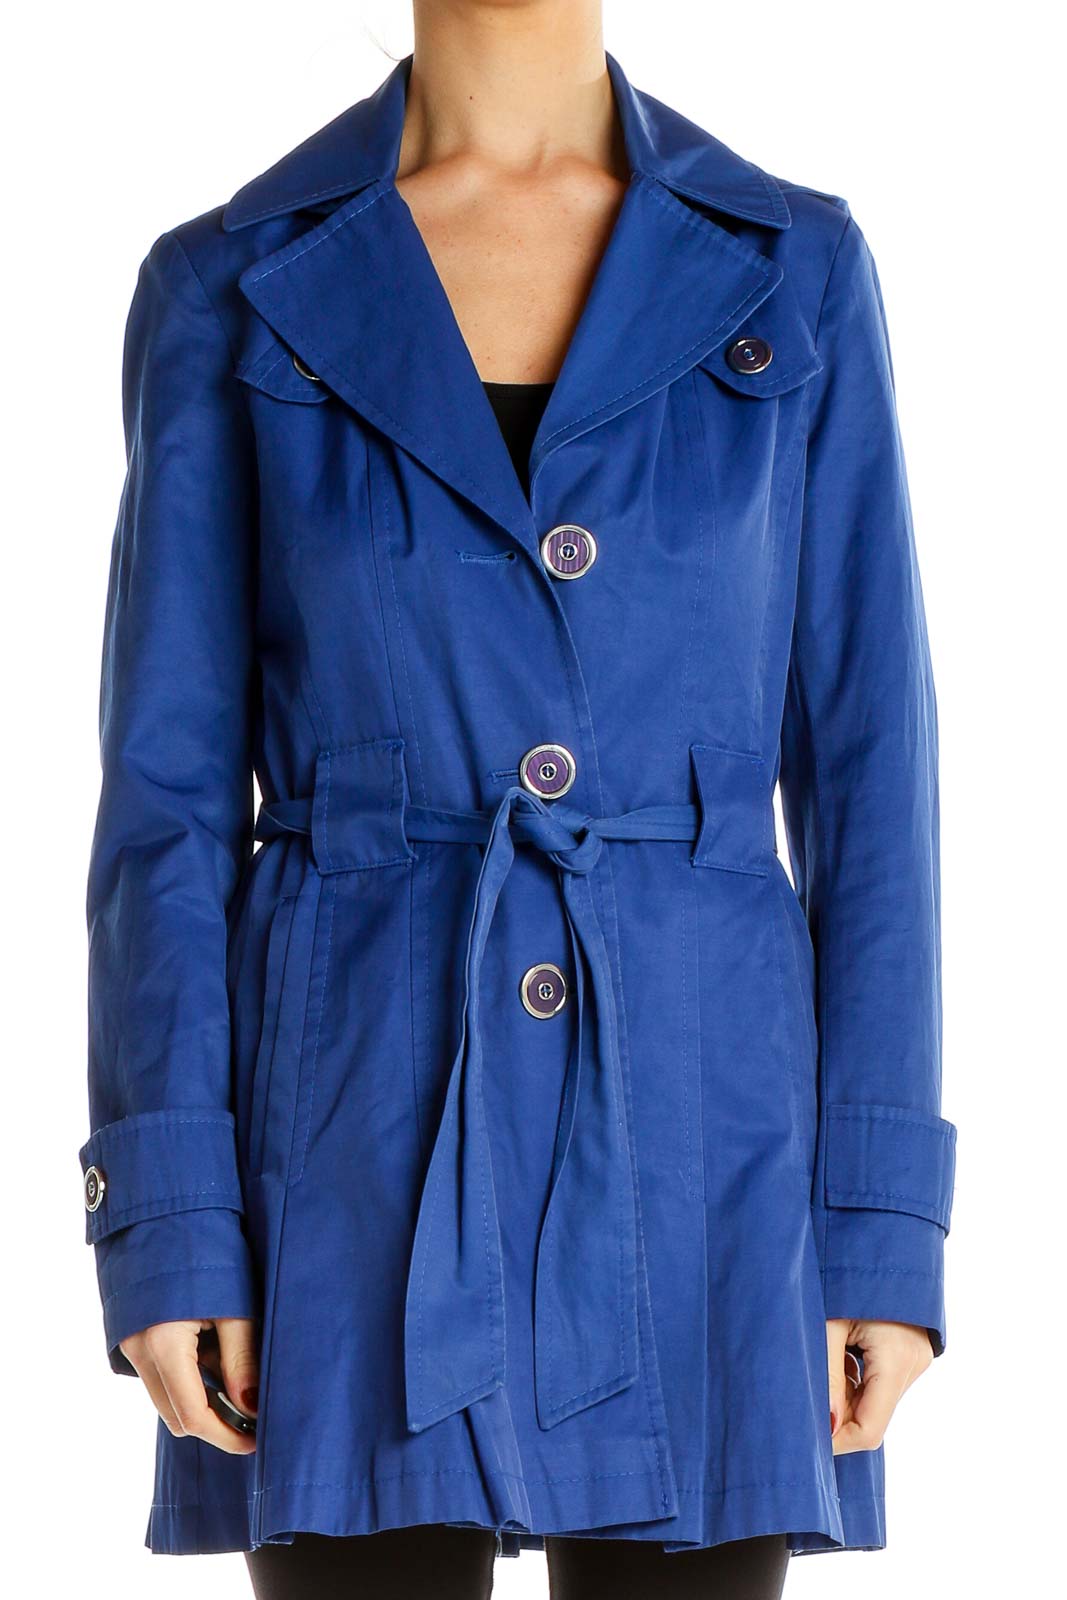 Blue Coat Front